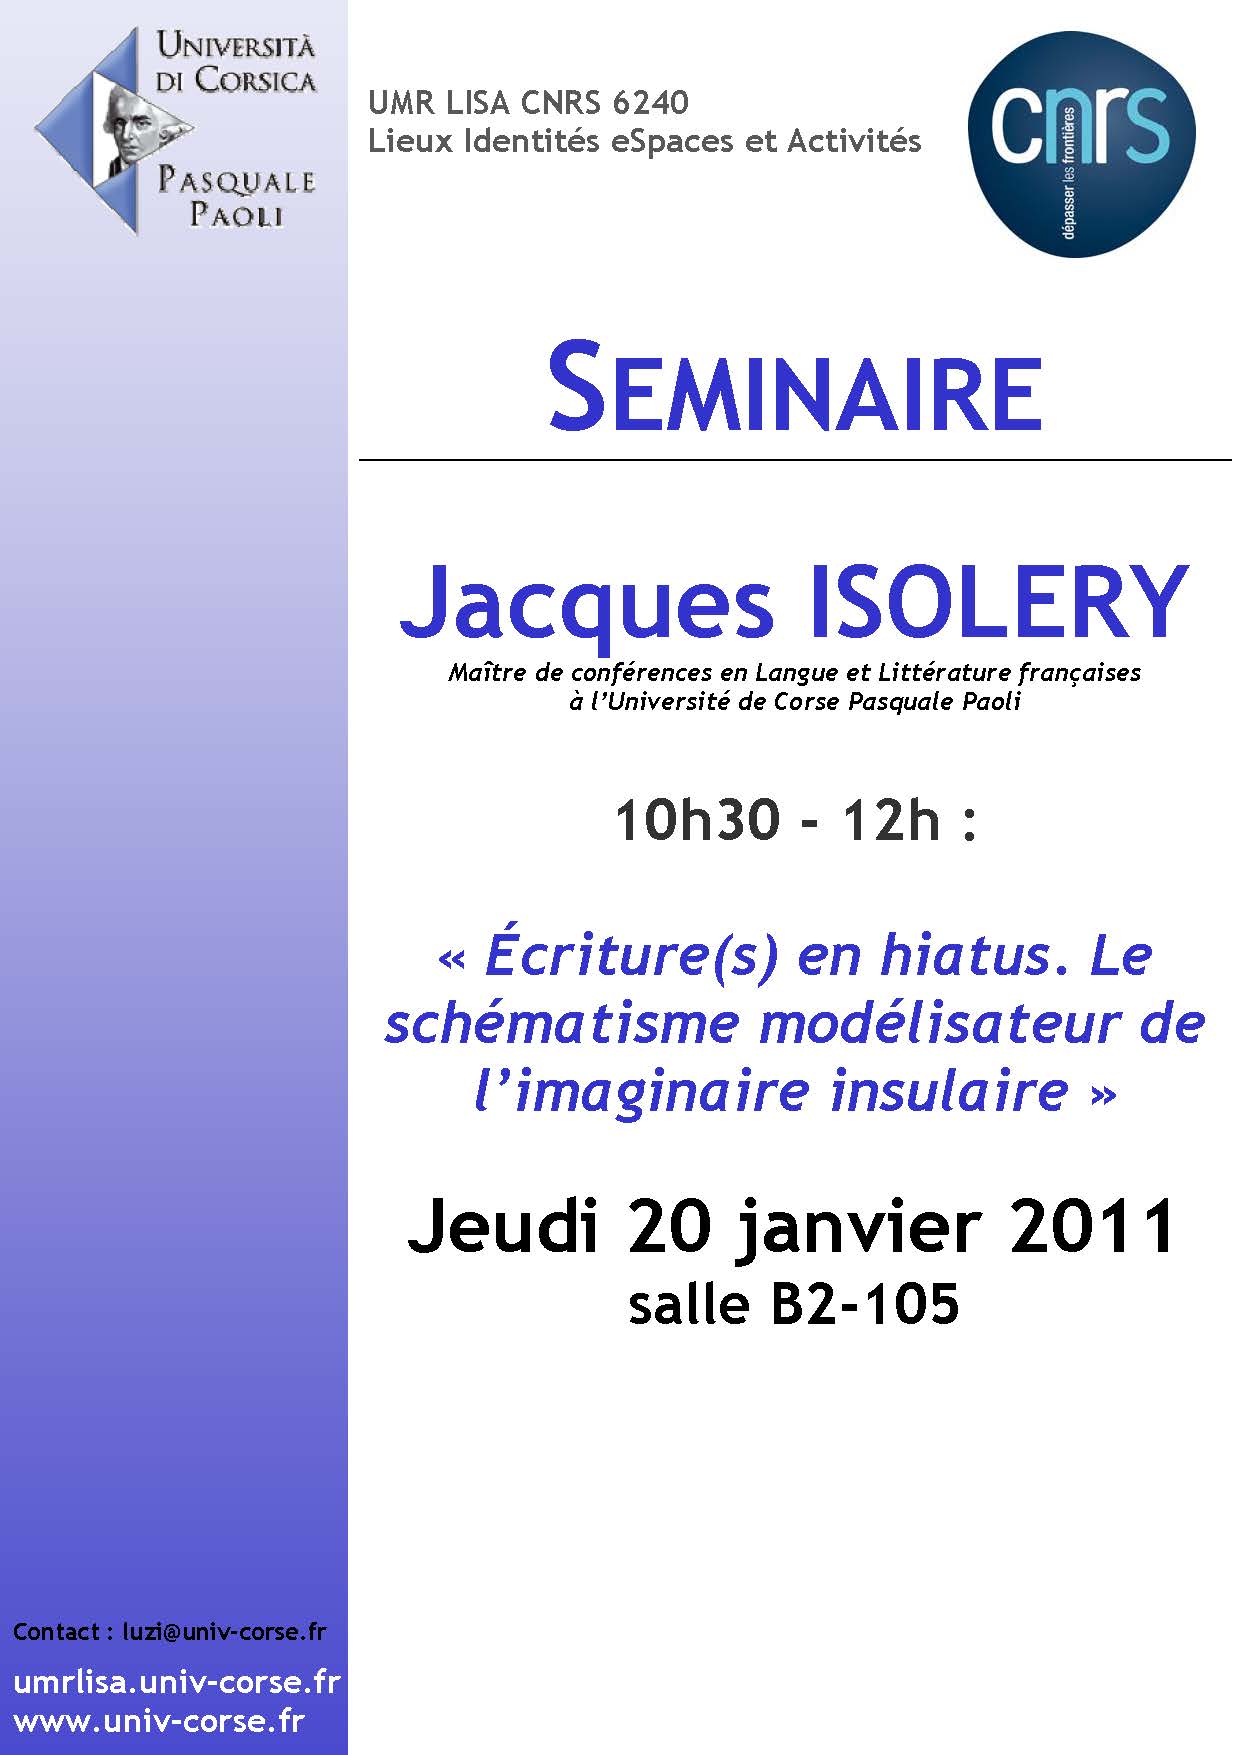 >Séminaire Jacques Isolery - Ecritures en hiatus, le schématisme modélisateur de l'imaginaire insulaire